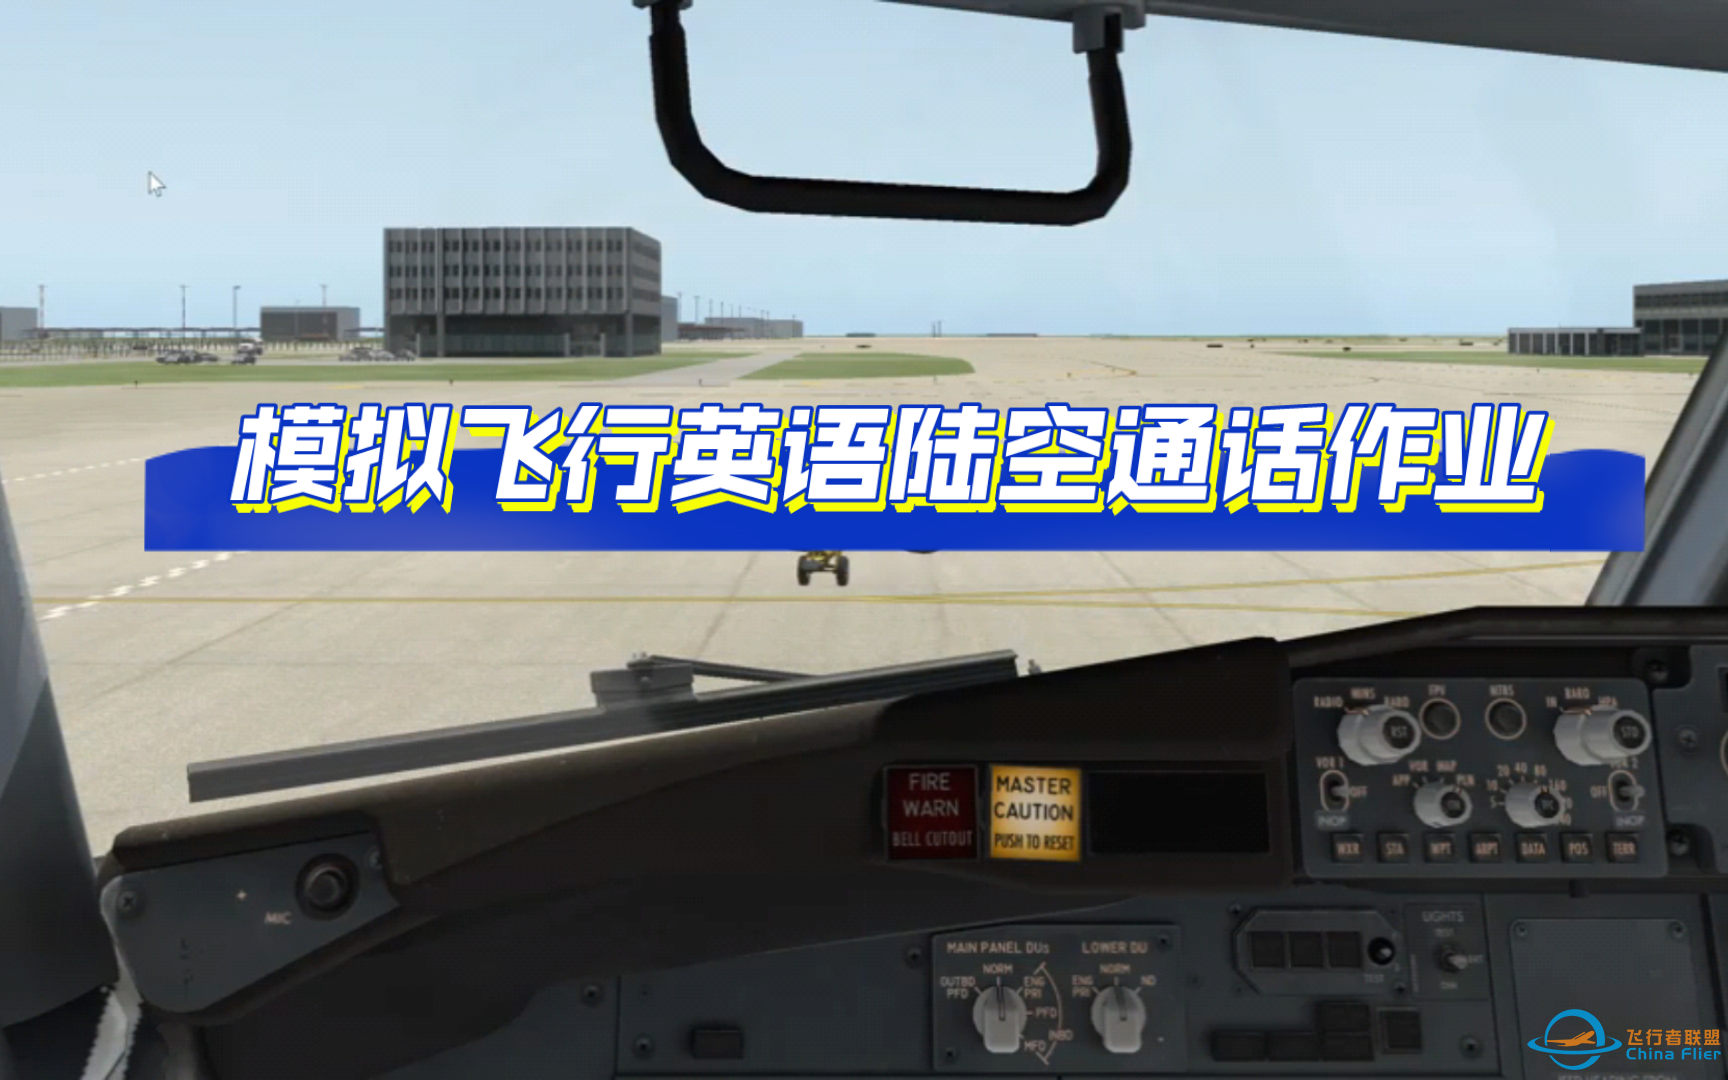 【飞行模拟英语陆空通话作业】Xplane飞行模拟陆空通话：ATIS-Line up-2939 